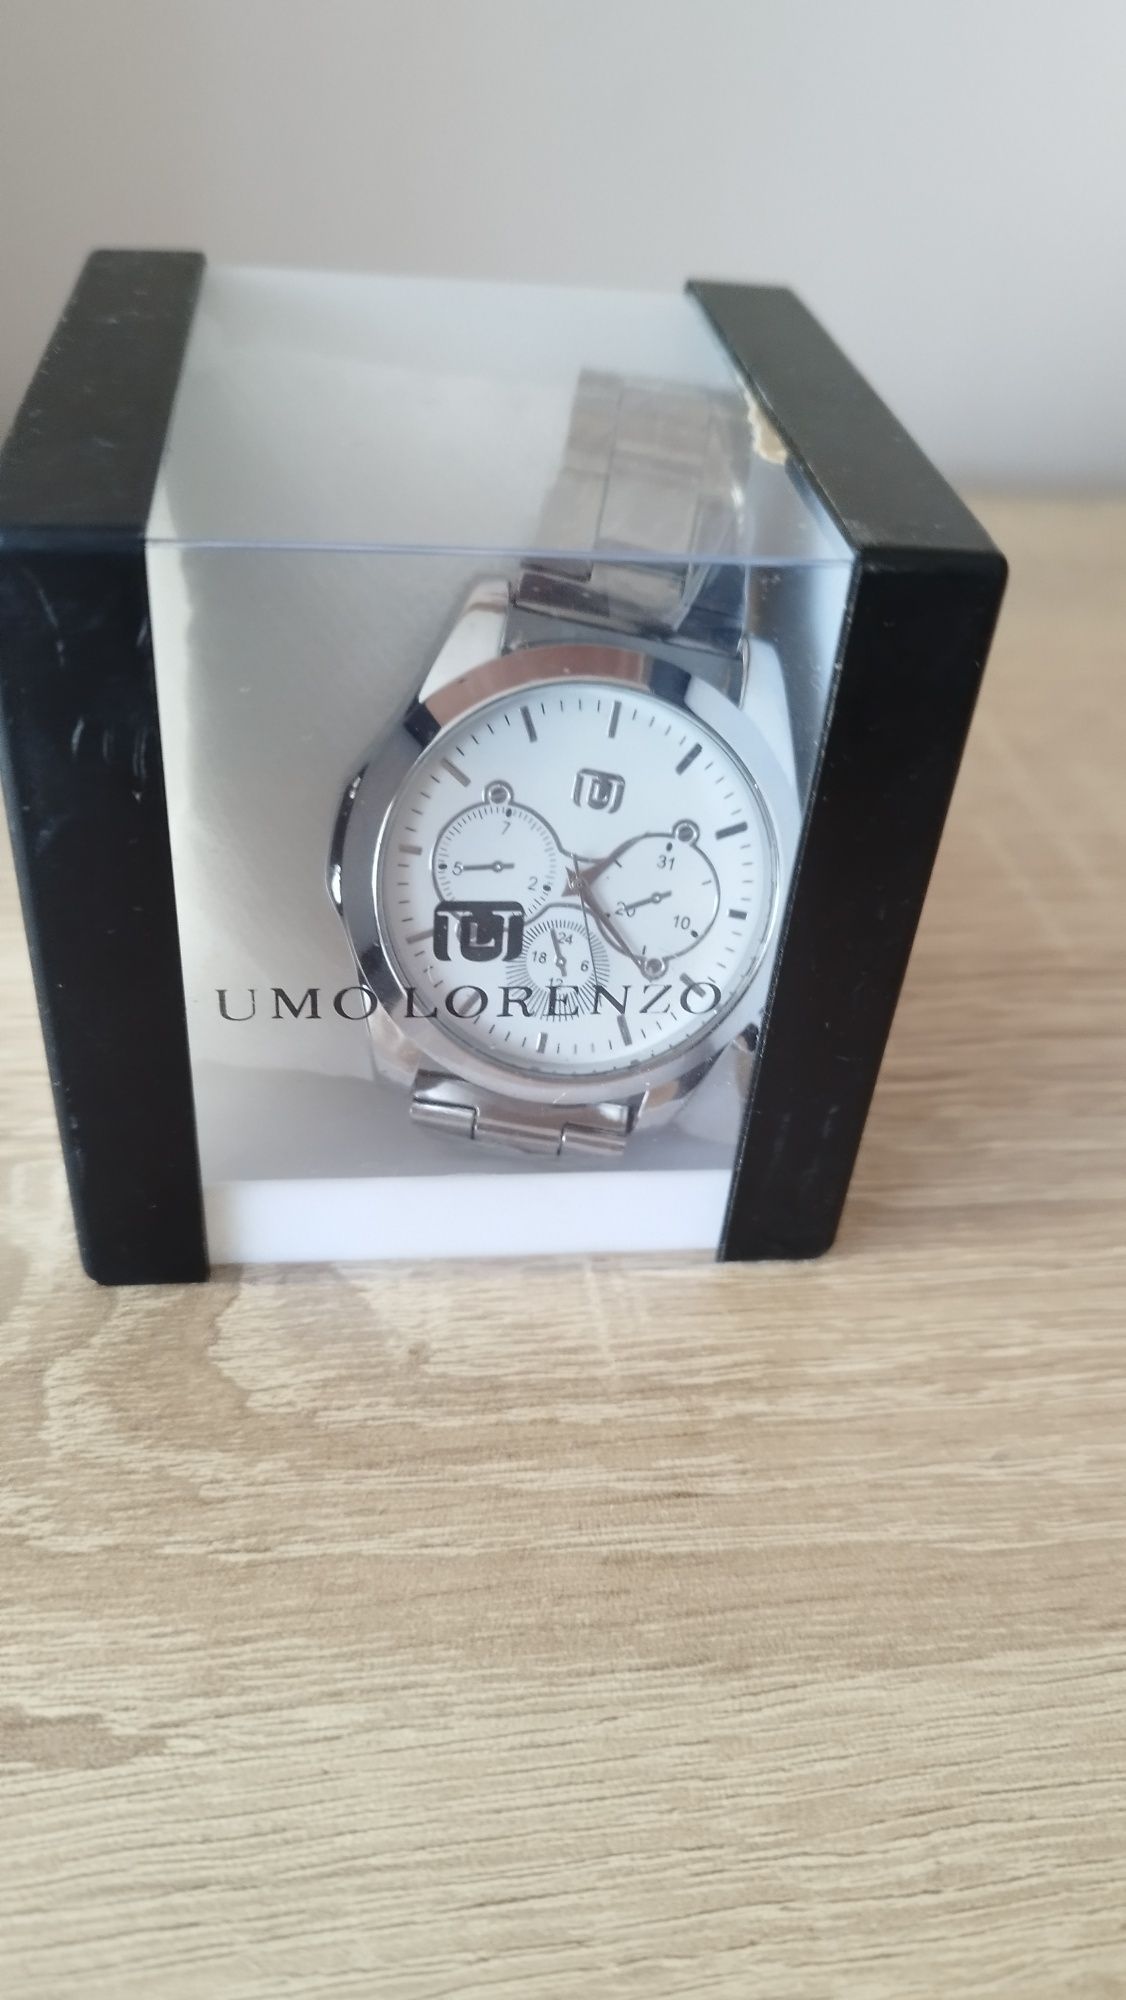 Мъжки часовници  "Umo lorenzo"